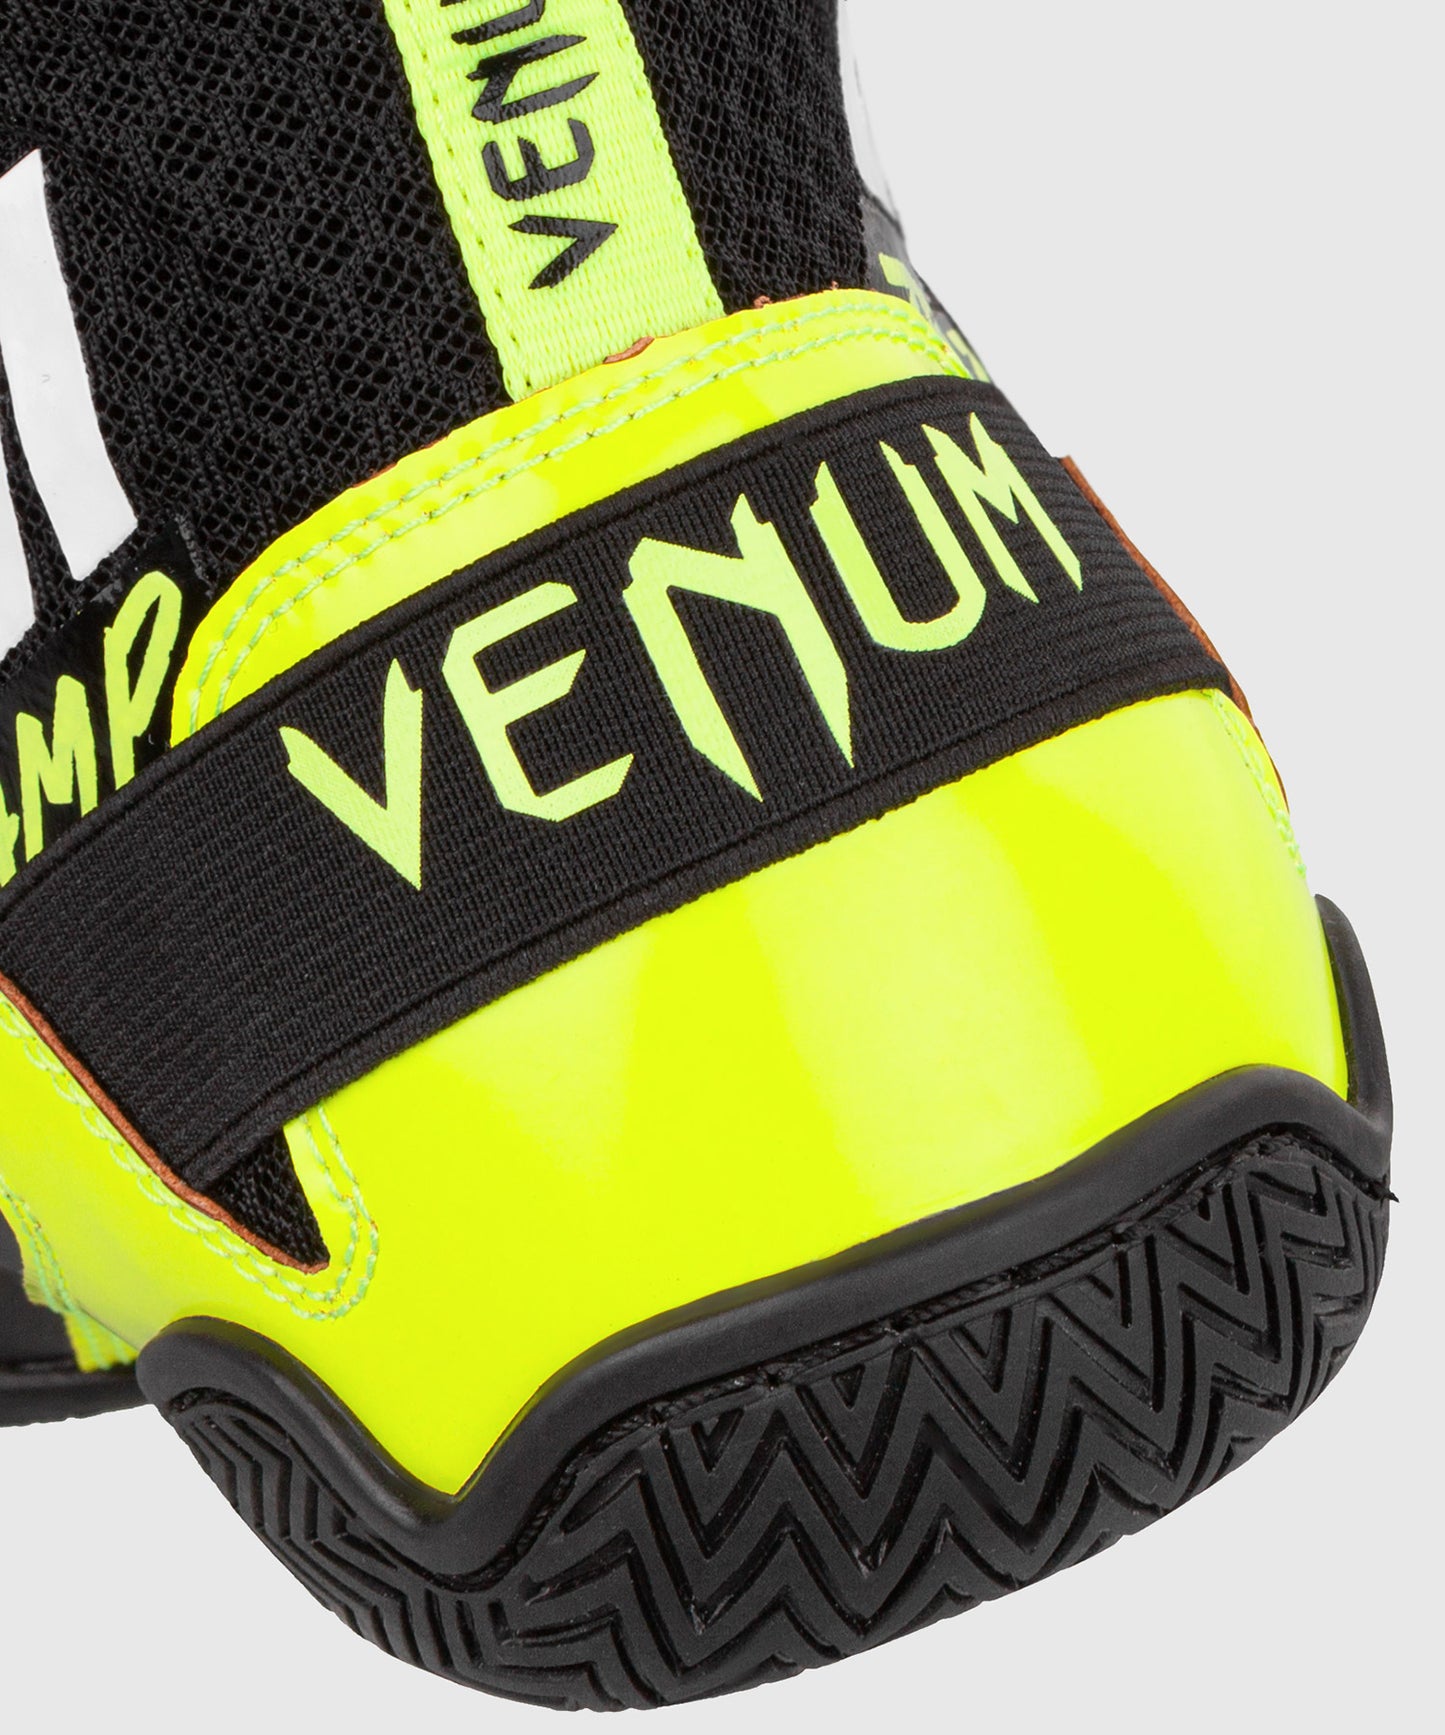 Venum Elite VTC 2 Edition Boxschuhe - Schwarz/Fluo Gelb